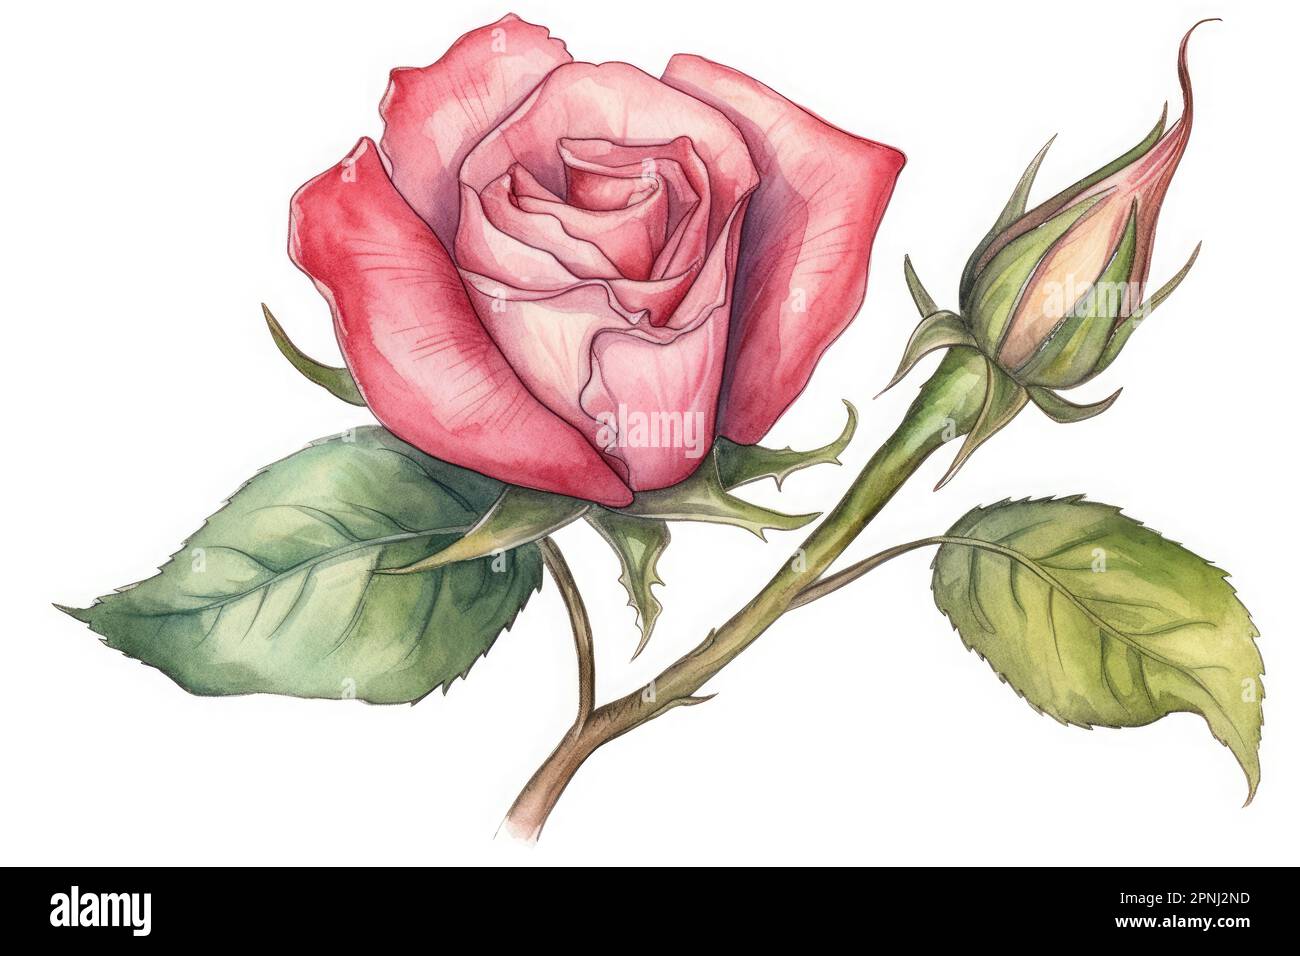 Erstelle ein skurriles Aquarell eines Rosenknochens mit komplexen Details und Schattierungen Stockfoto